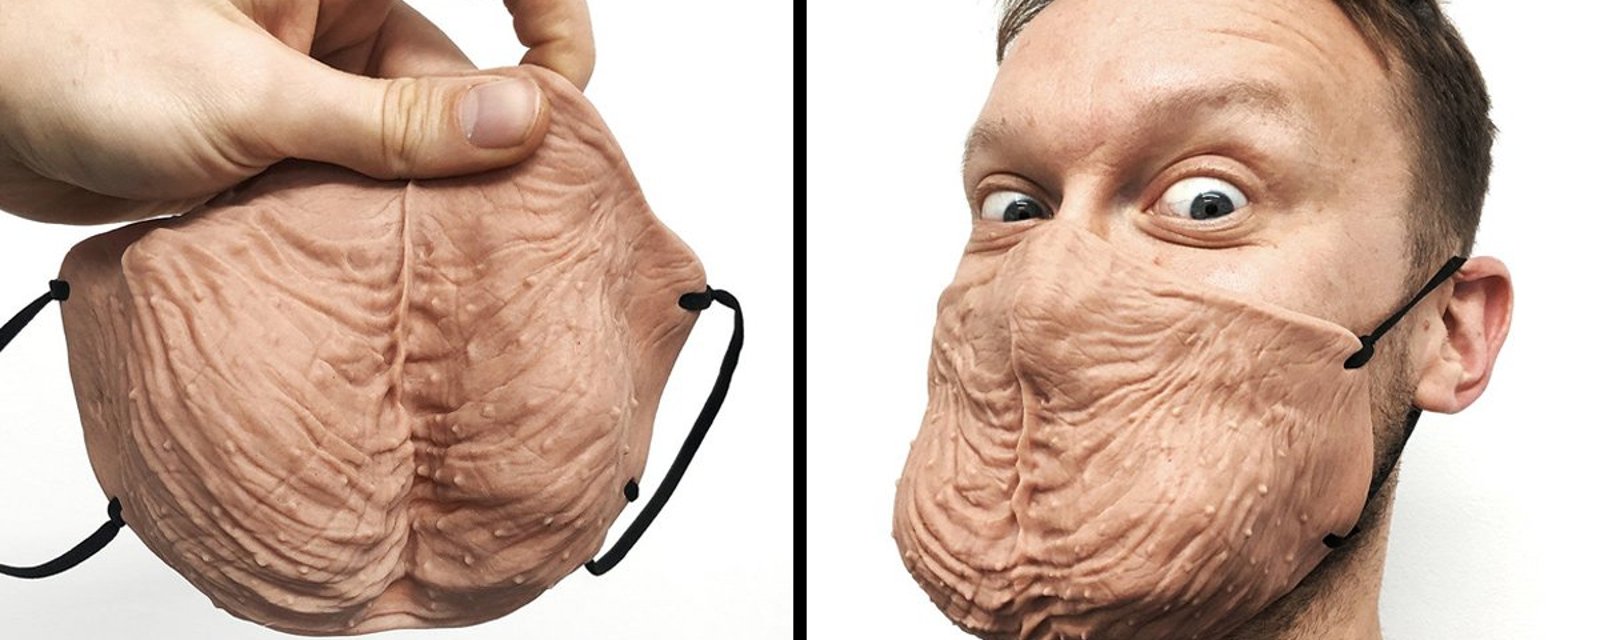 Le summum du ridicule en matière de masques a été atteint: un masque «testicules»!